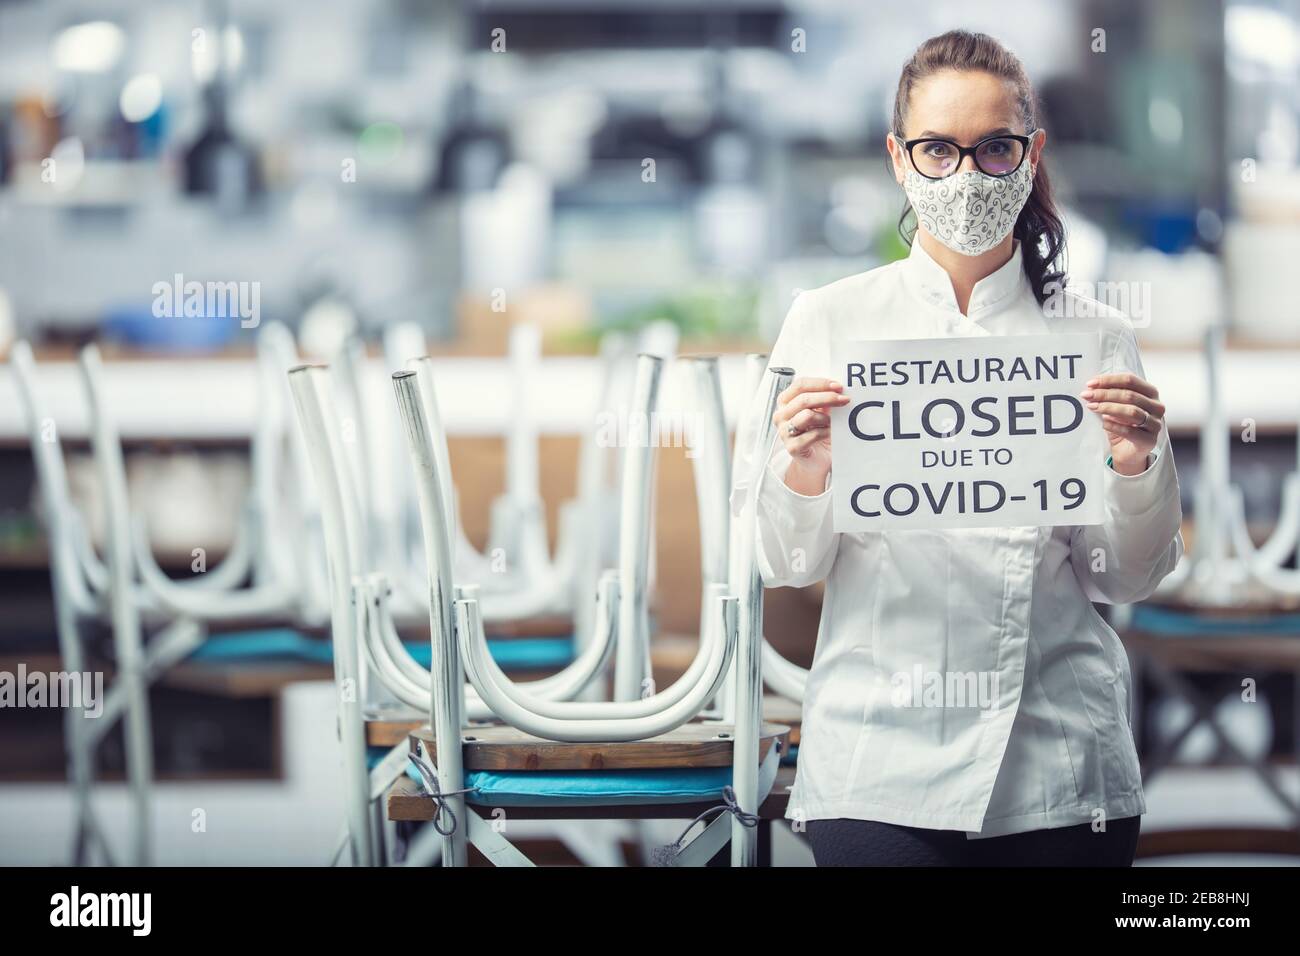 Die Köchin trägt eine Gesichtsmaske und hält ein Schild für das Restaurant, das wegen Covid-19 geschlossen ist. Stockfoto